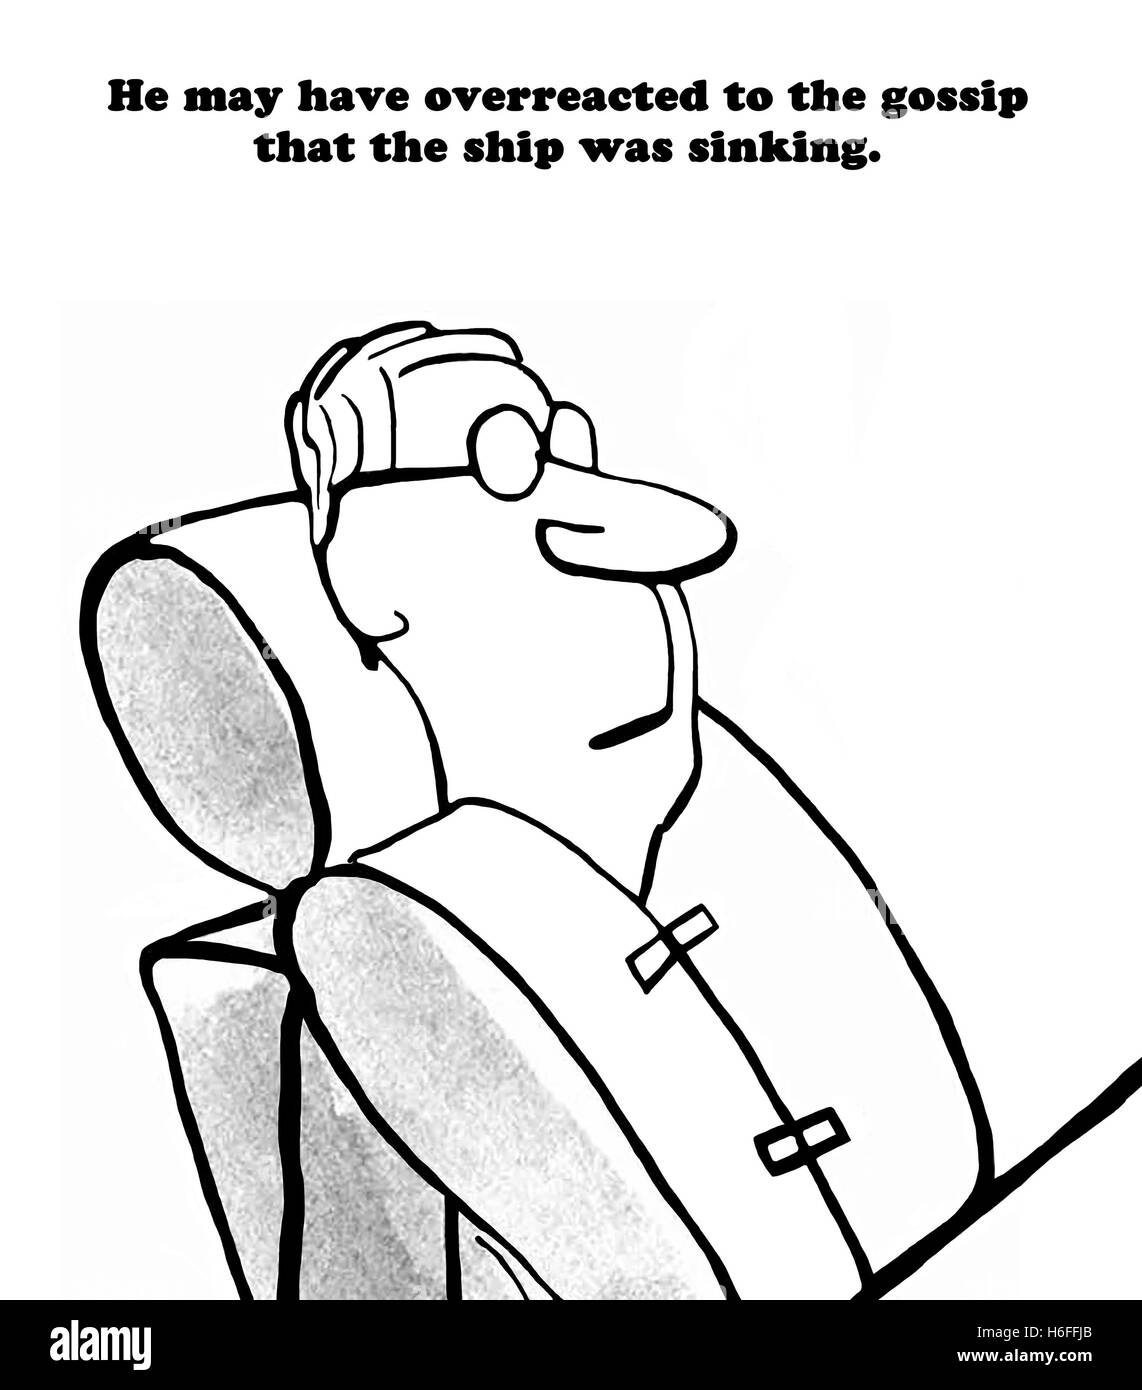 Business illustration noir et blanc d'un homme portant un gilet de sauvetage, il a peut-être réagi à des commérages de Sinking Ship. Banque D'Images